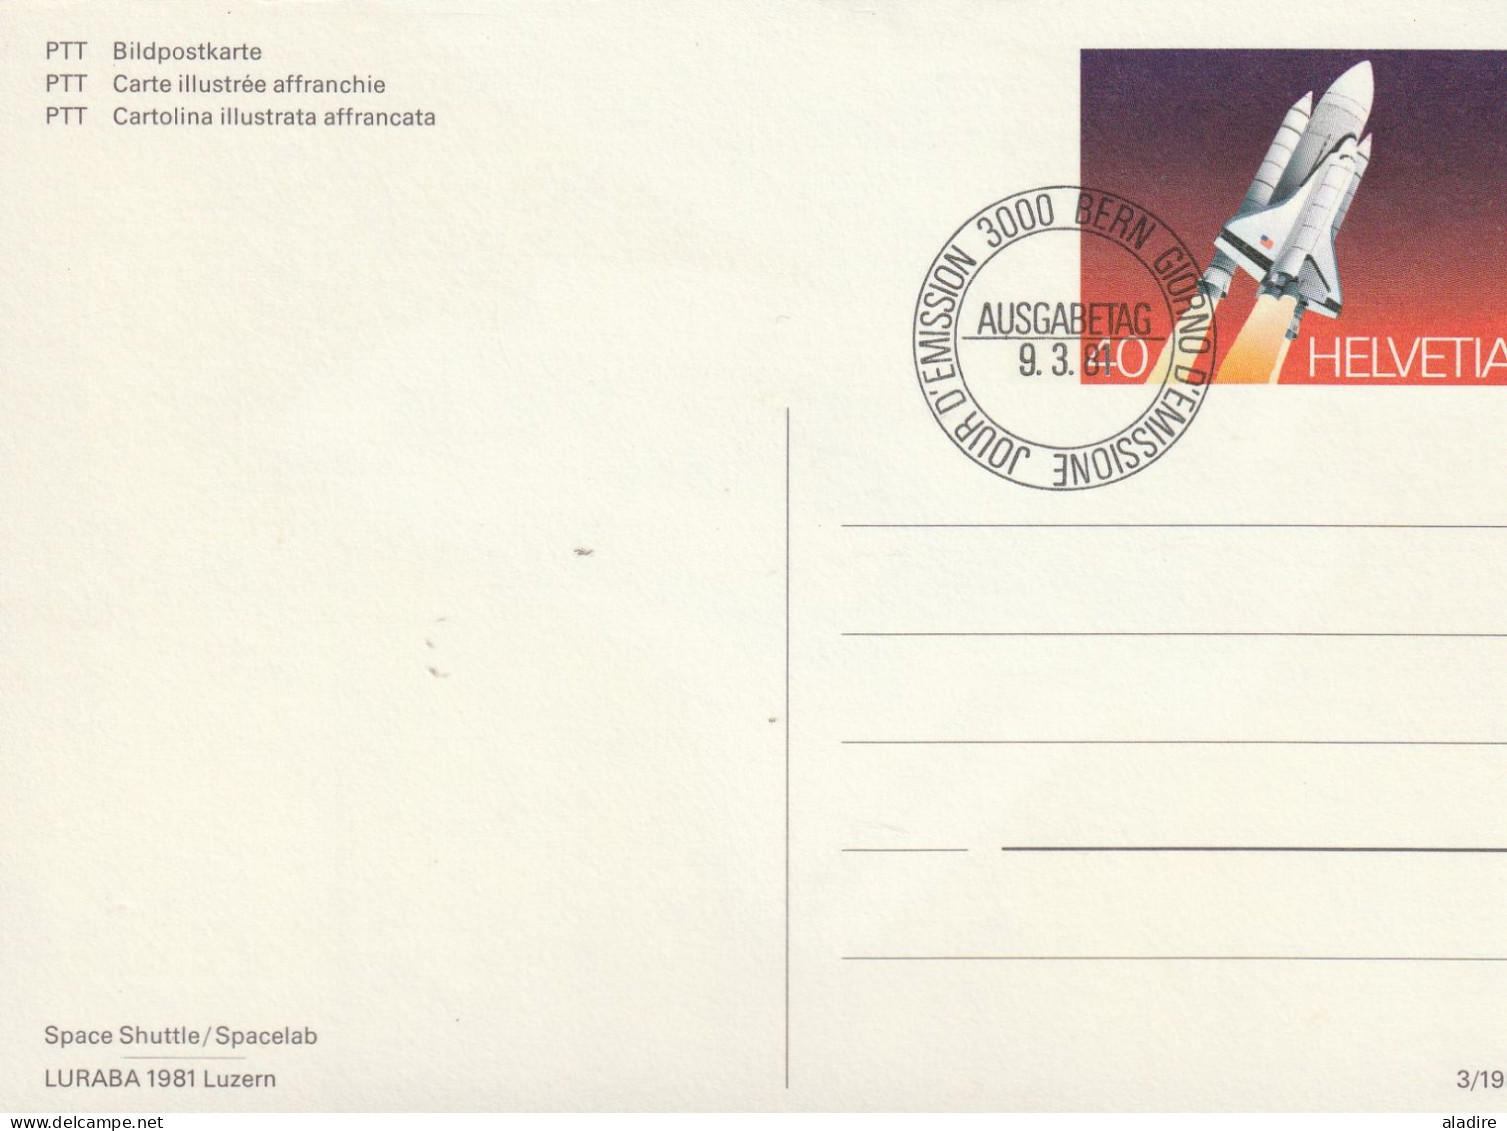 1900 / 2003 - petite collection de 12 CP et enveloppes (recommandé et poste aérienne) de SUISSE - 24 scans